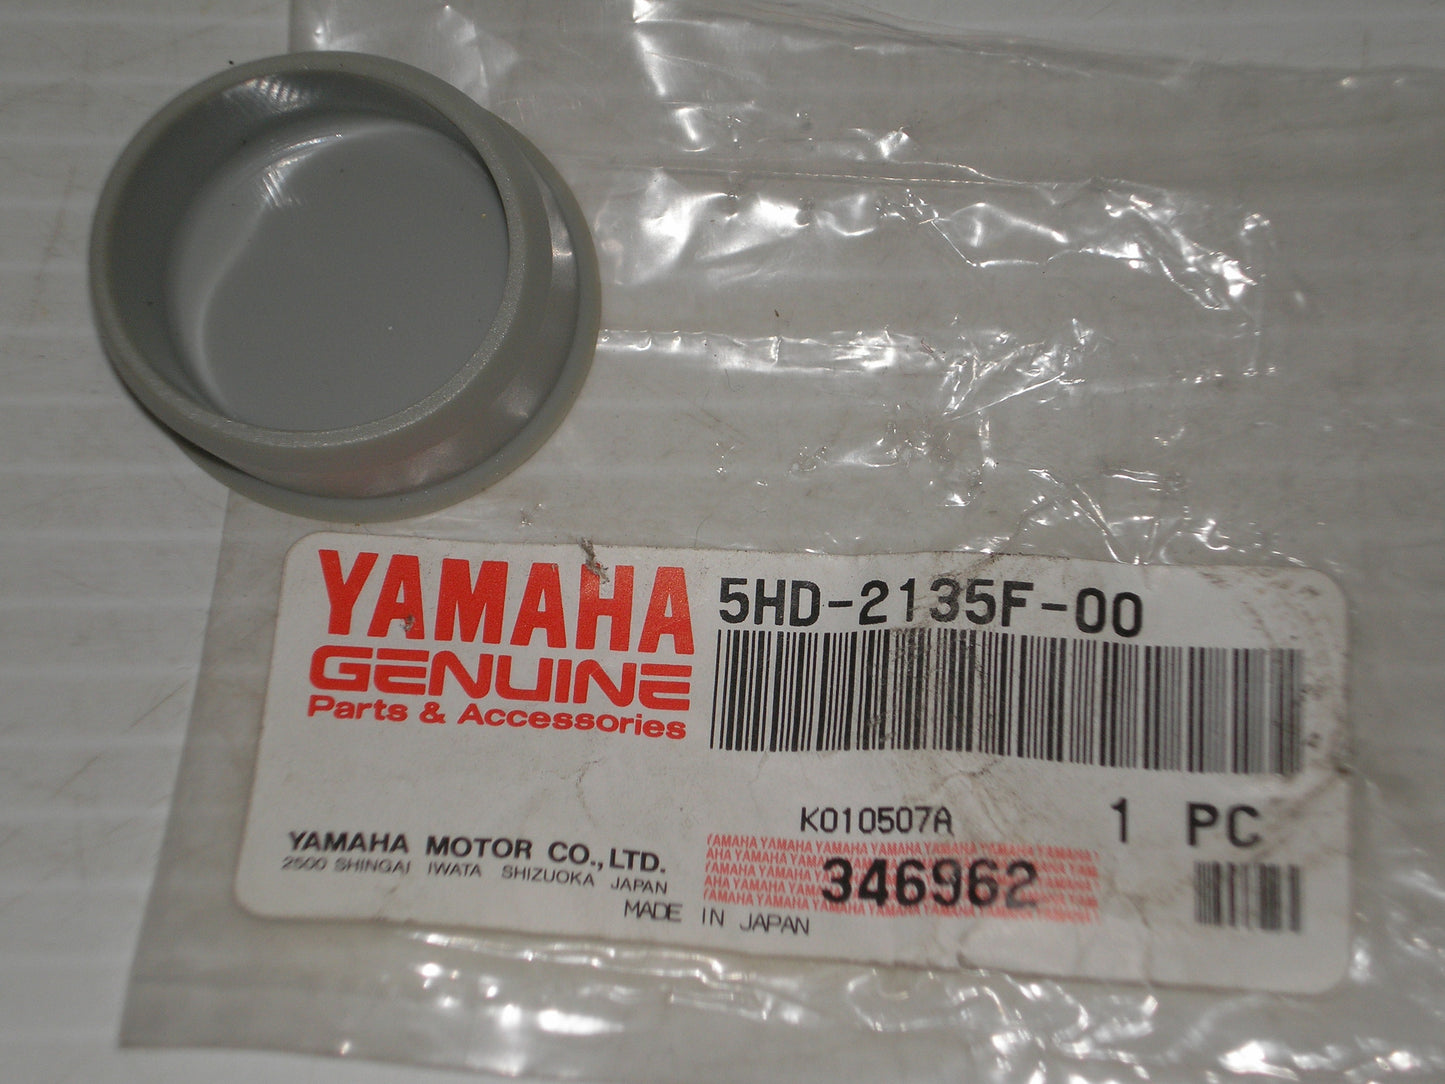 YAMAHA WR250 WR400 WR426 WR450 YZ125 YZ250 YZ426 YZ450 Rear Arm Pivot Cover Cap 5HD-2135F-00